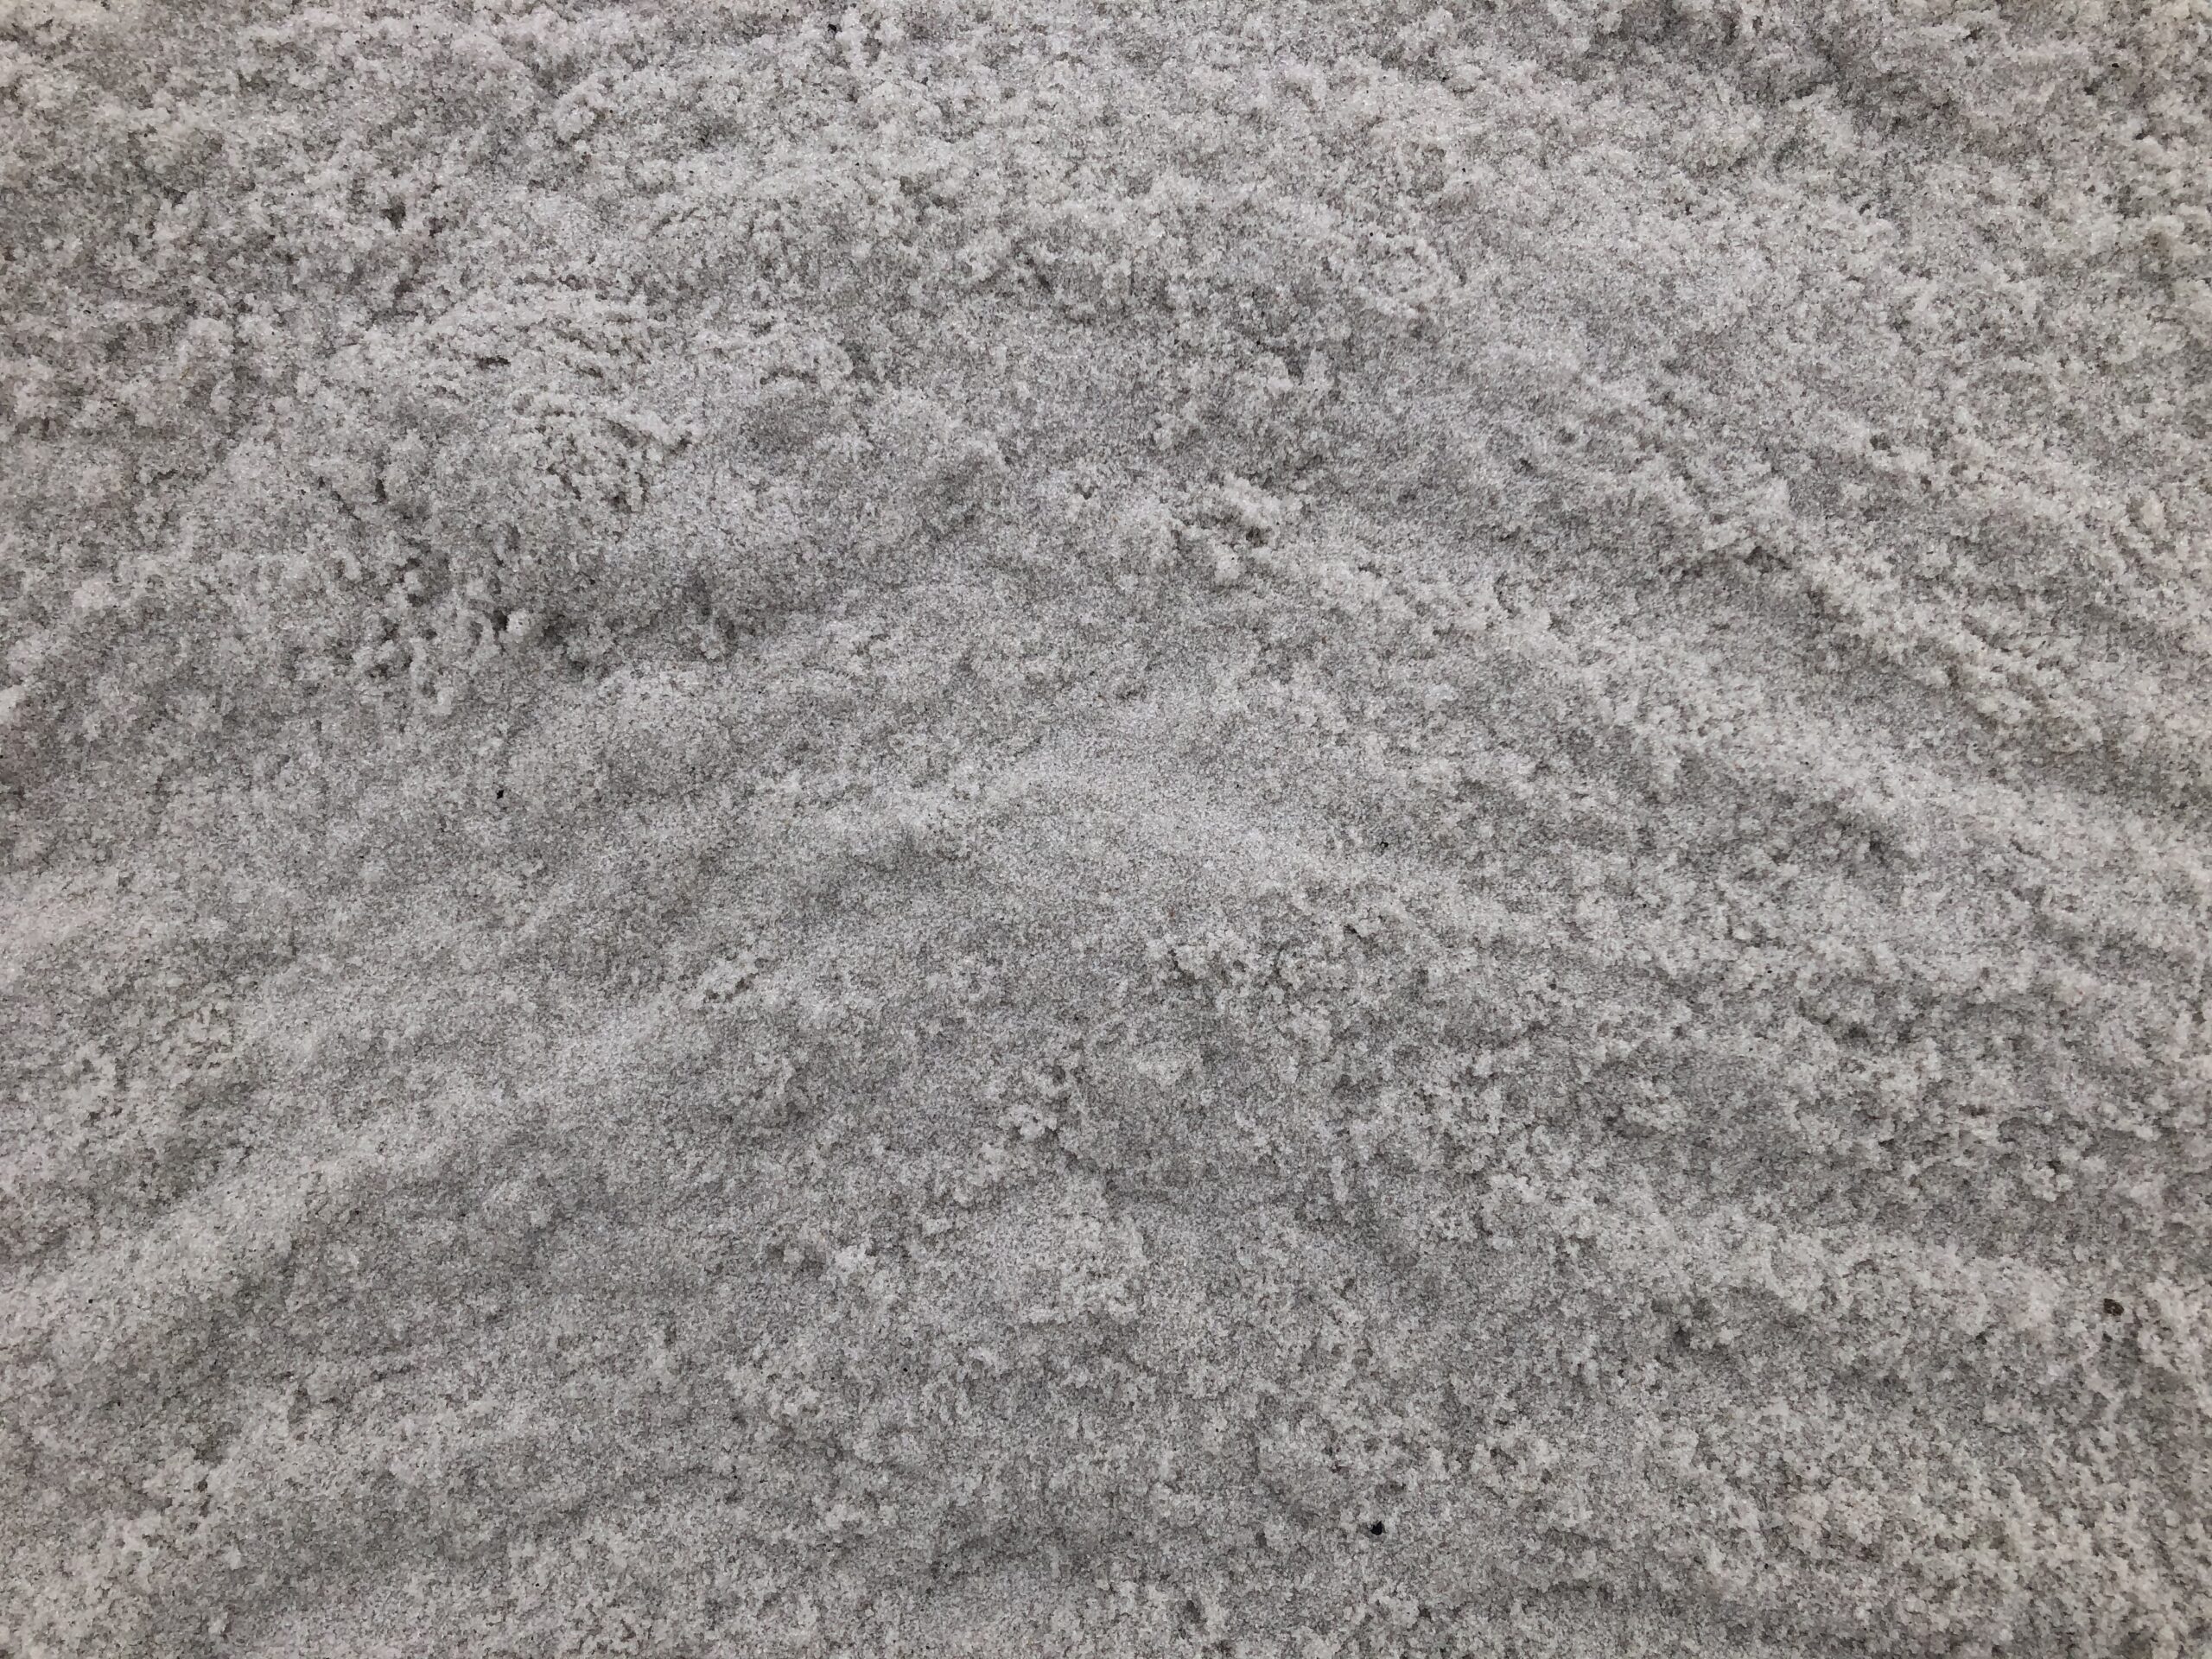 NorthRock® Play Sand - TCC Materials